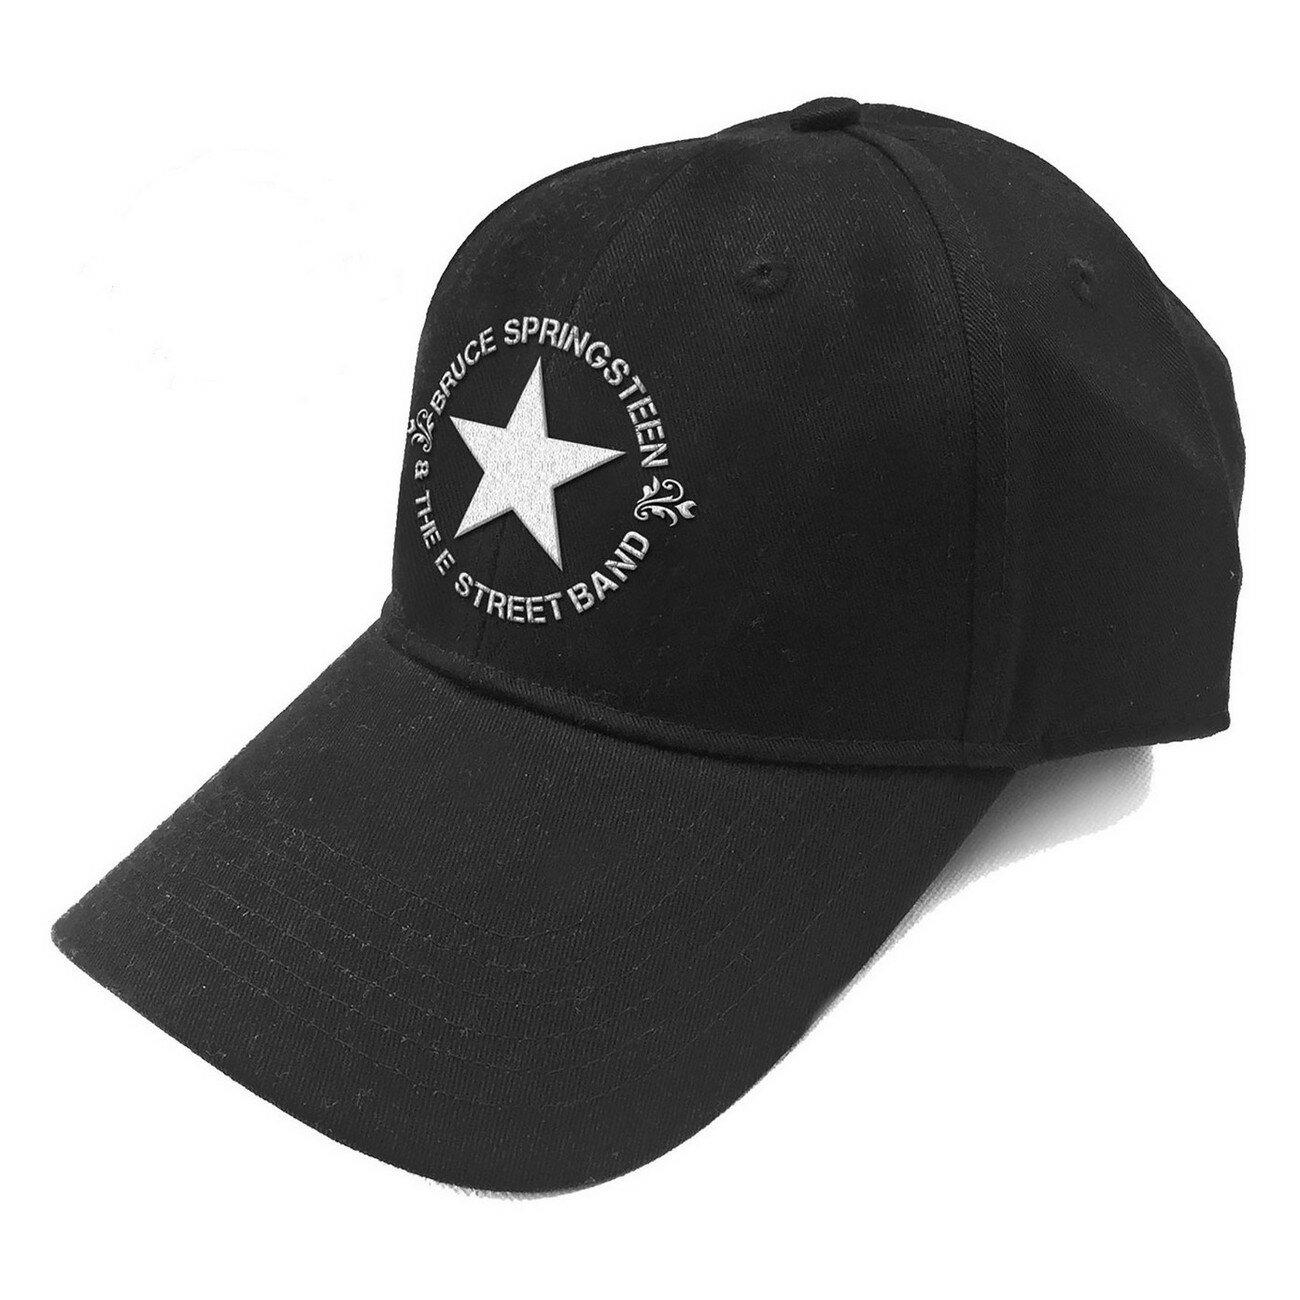 (ブルース・スプリングスティーン) Bruce Springsteen オフィシャル商品 ユニセックス Star キャップ ロゴ 帽子 ハット 【海外通販】